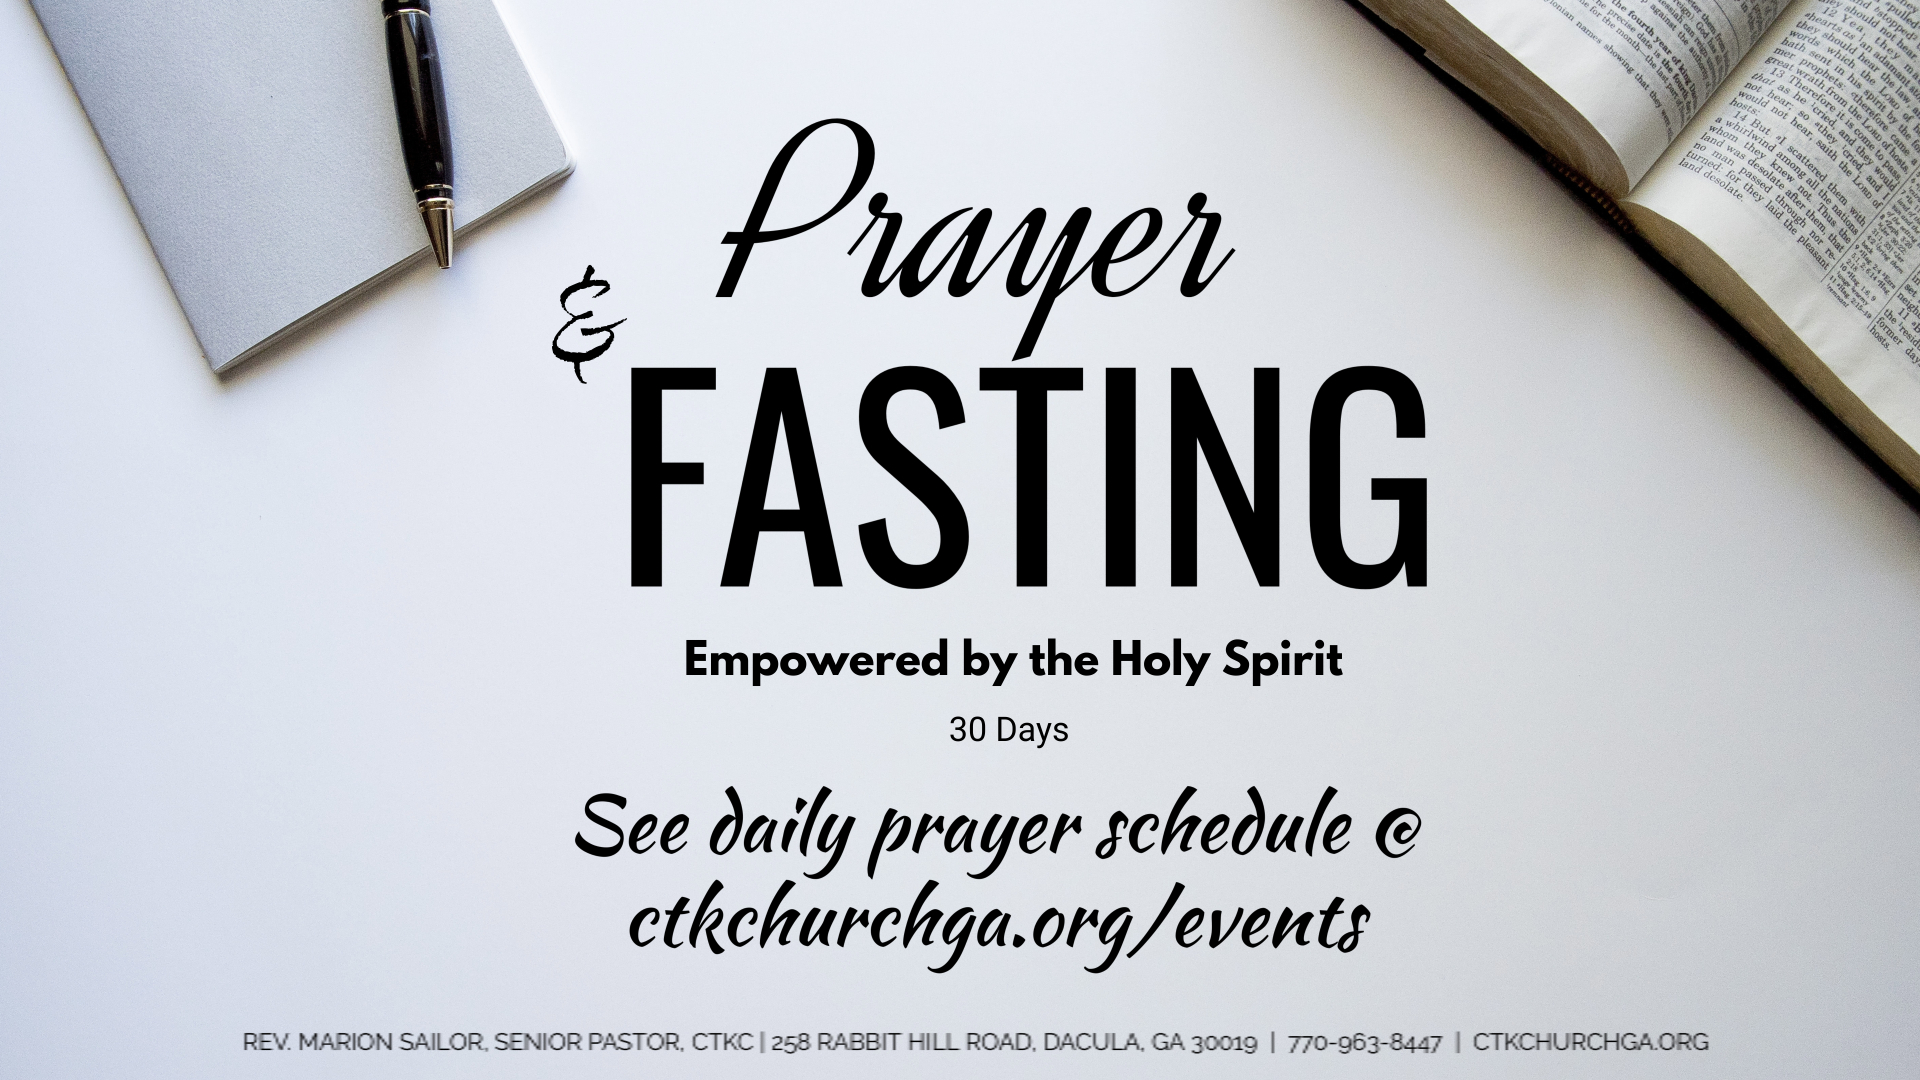 Fasting and praying